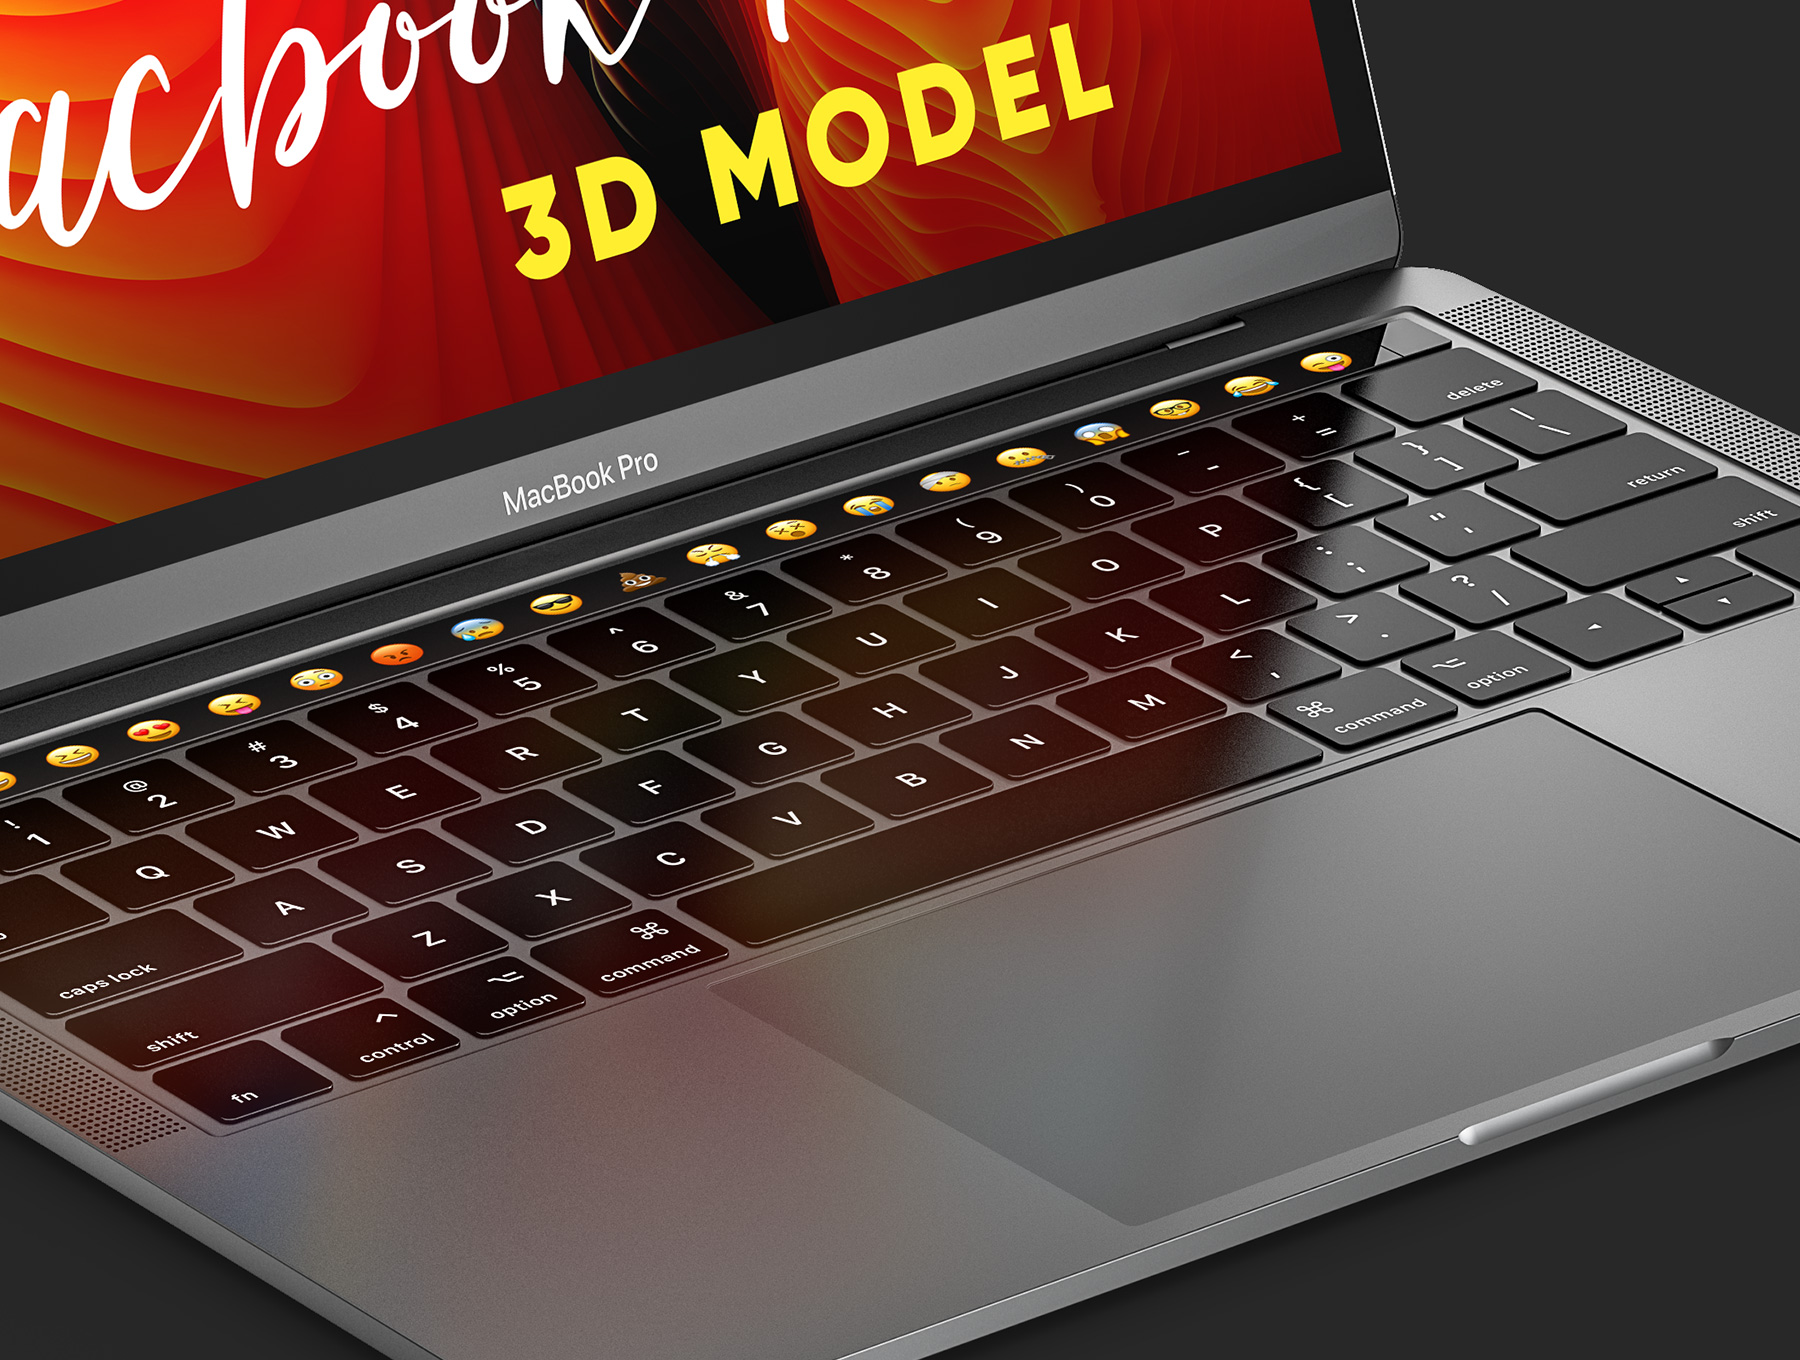 一套完美专业的着陆页MacBook Pro 3D Model